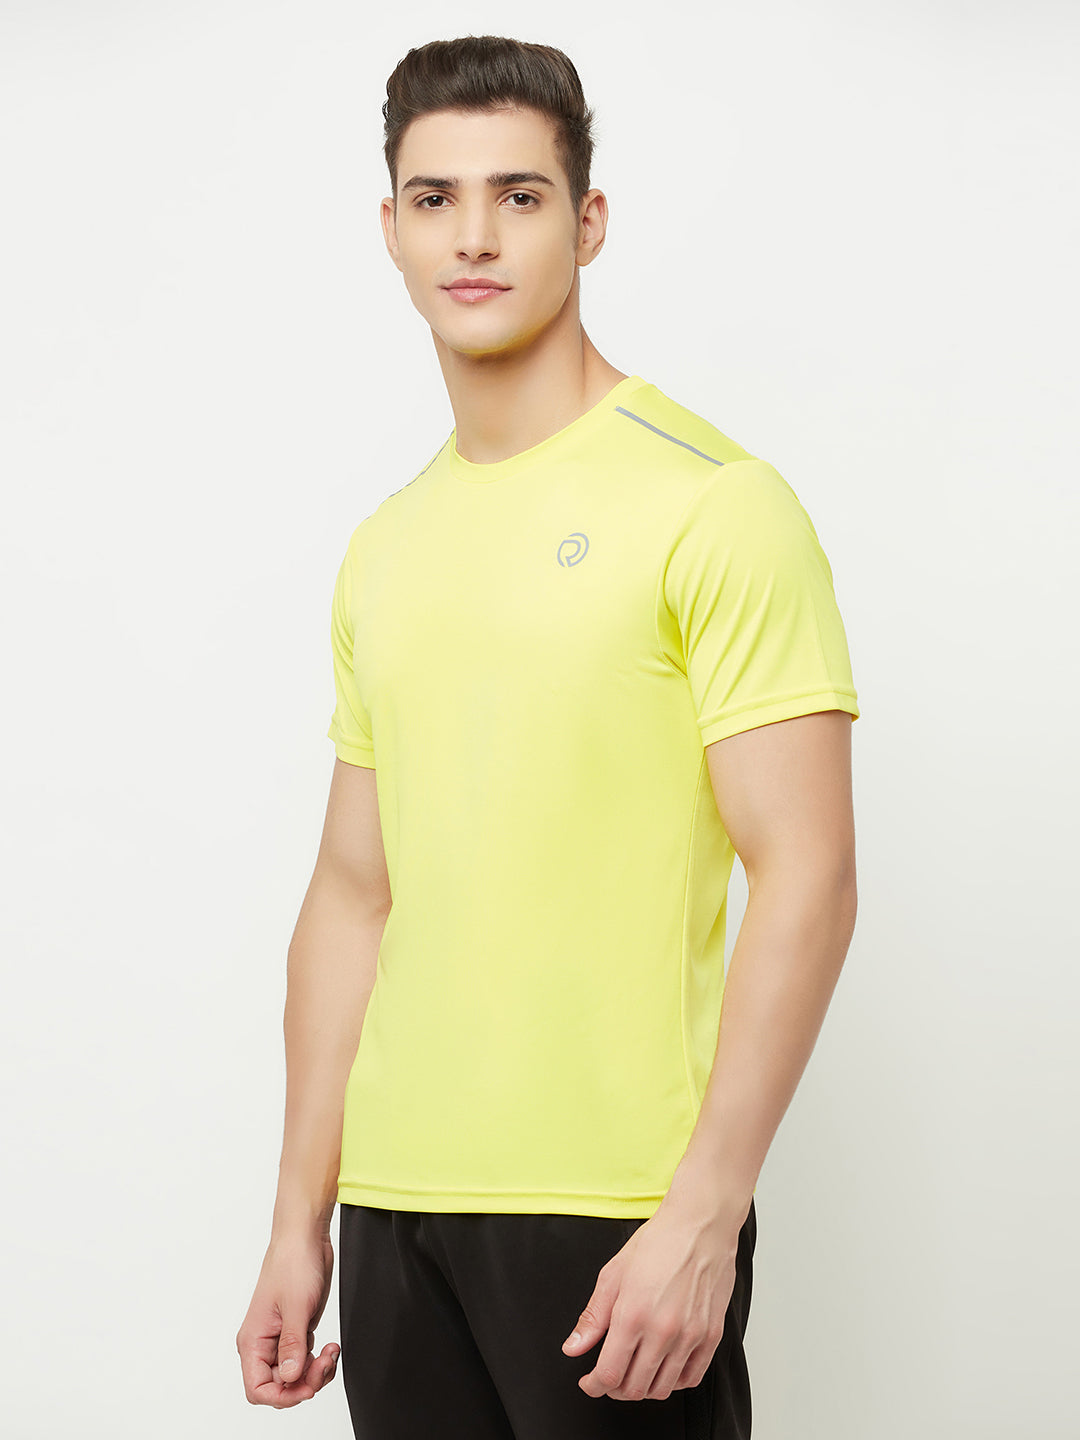 Dry Tech Light Running & Training Tshirt - Pack of 2 Neon Orange & Yellow